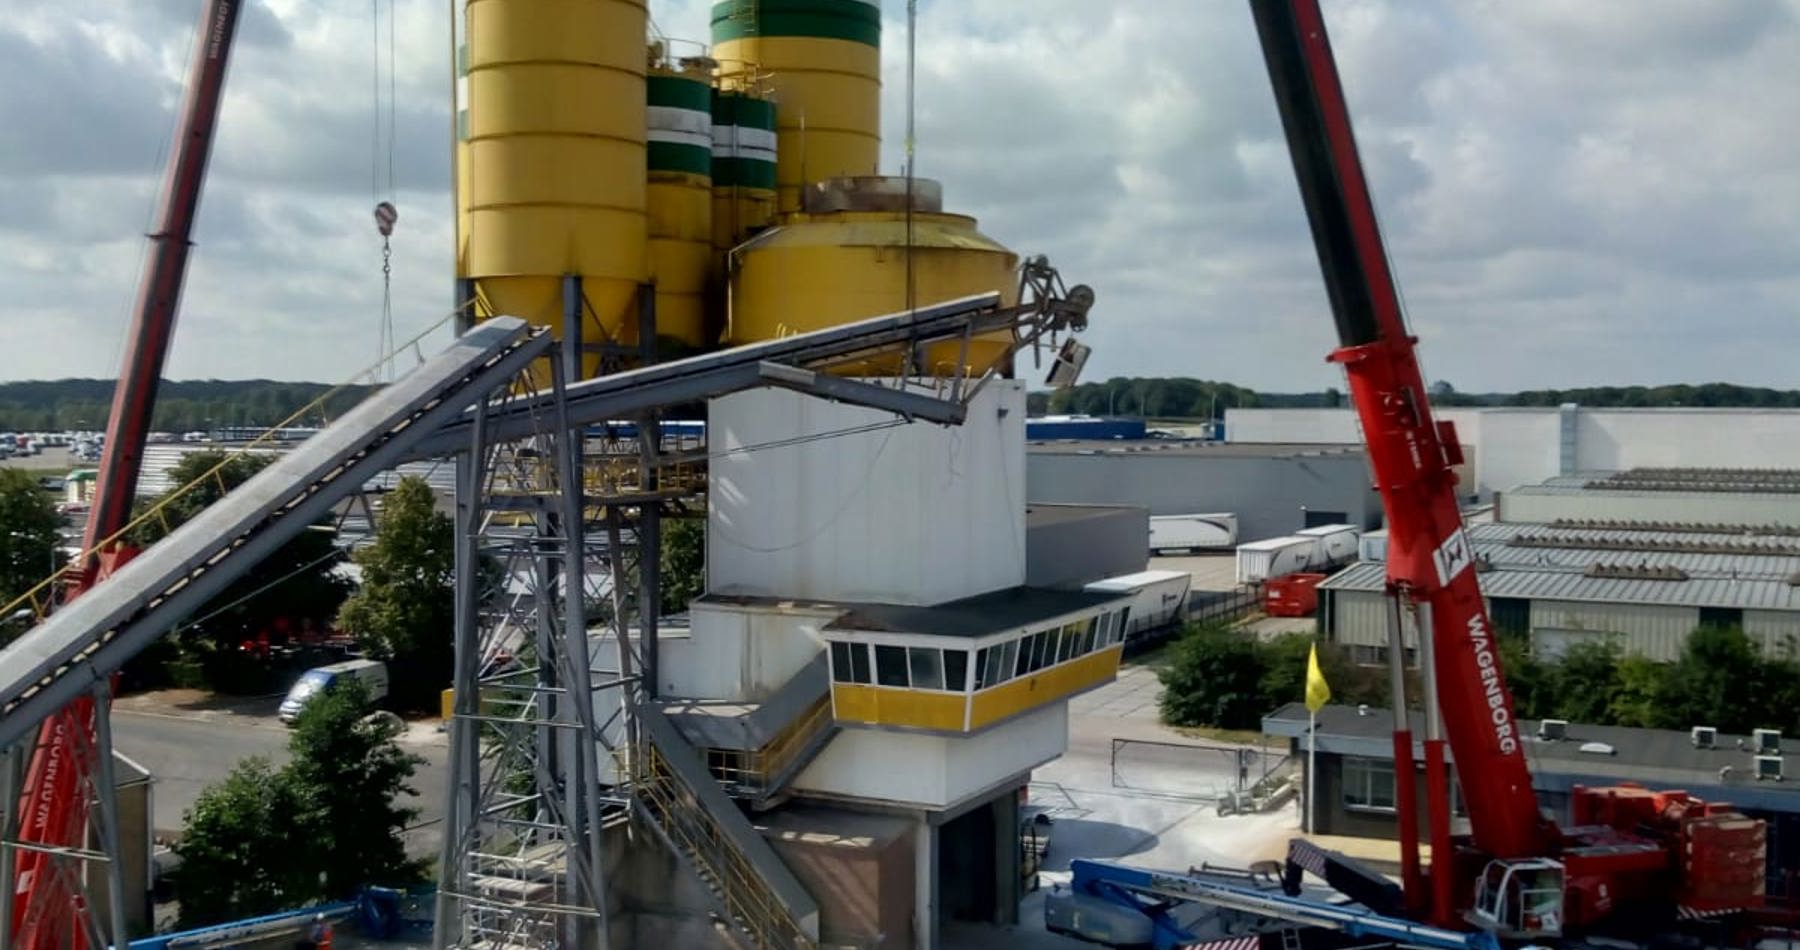 700 tonner in actie in Zwolle